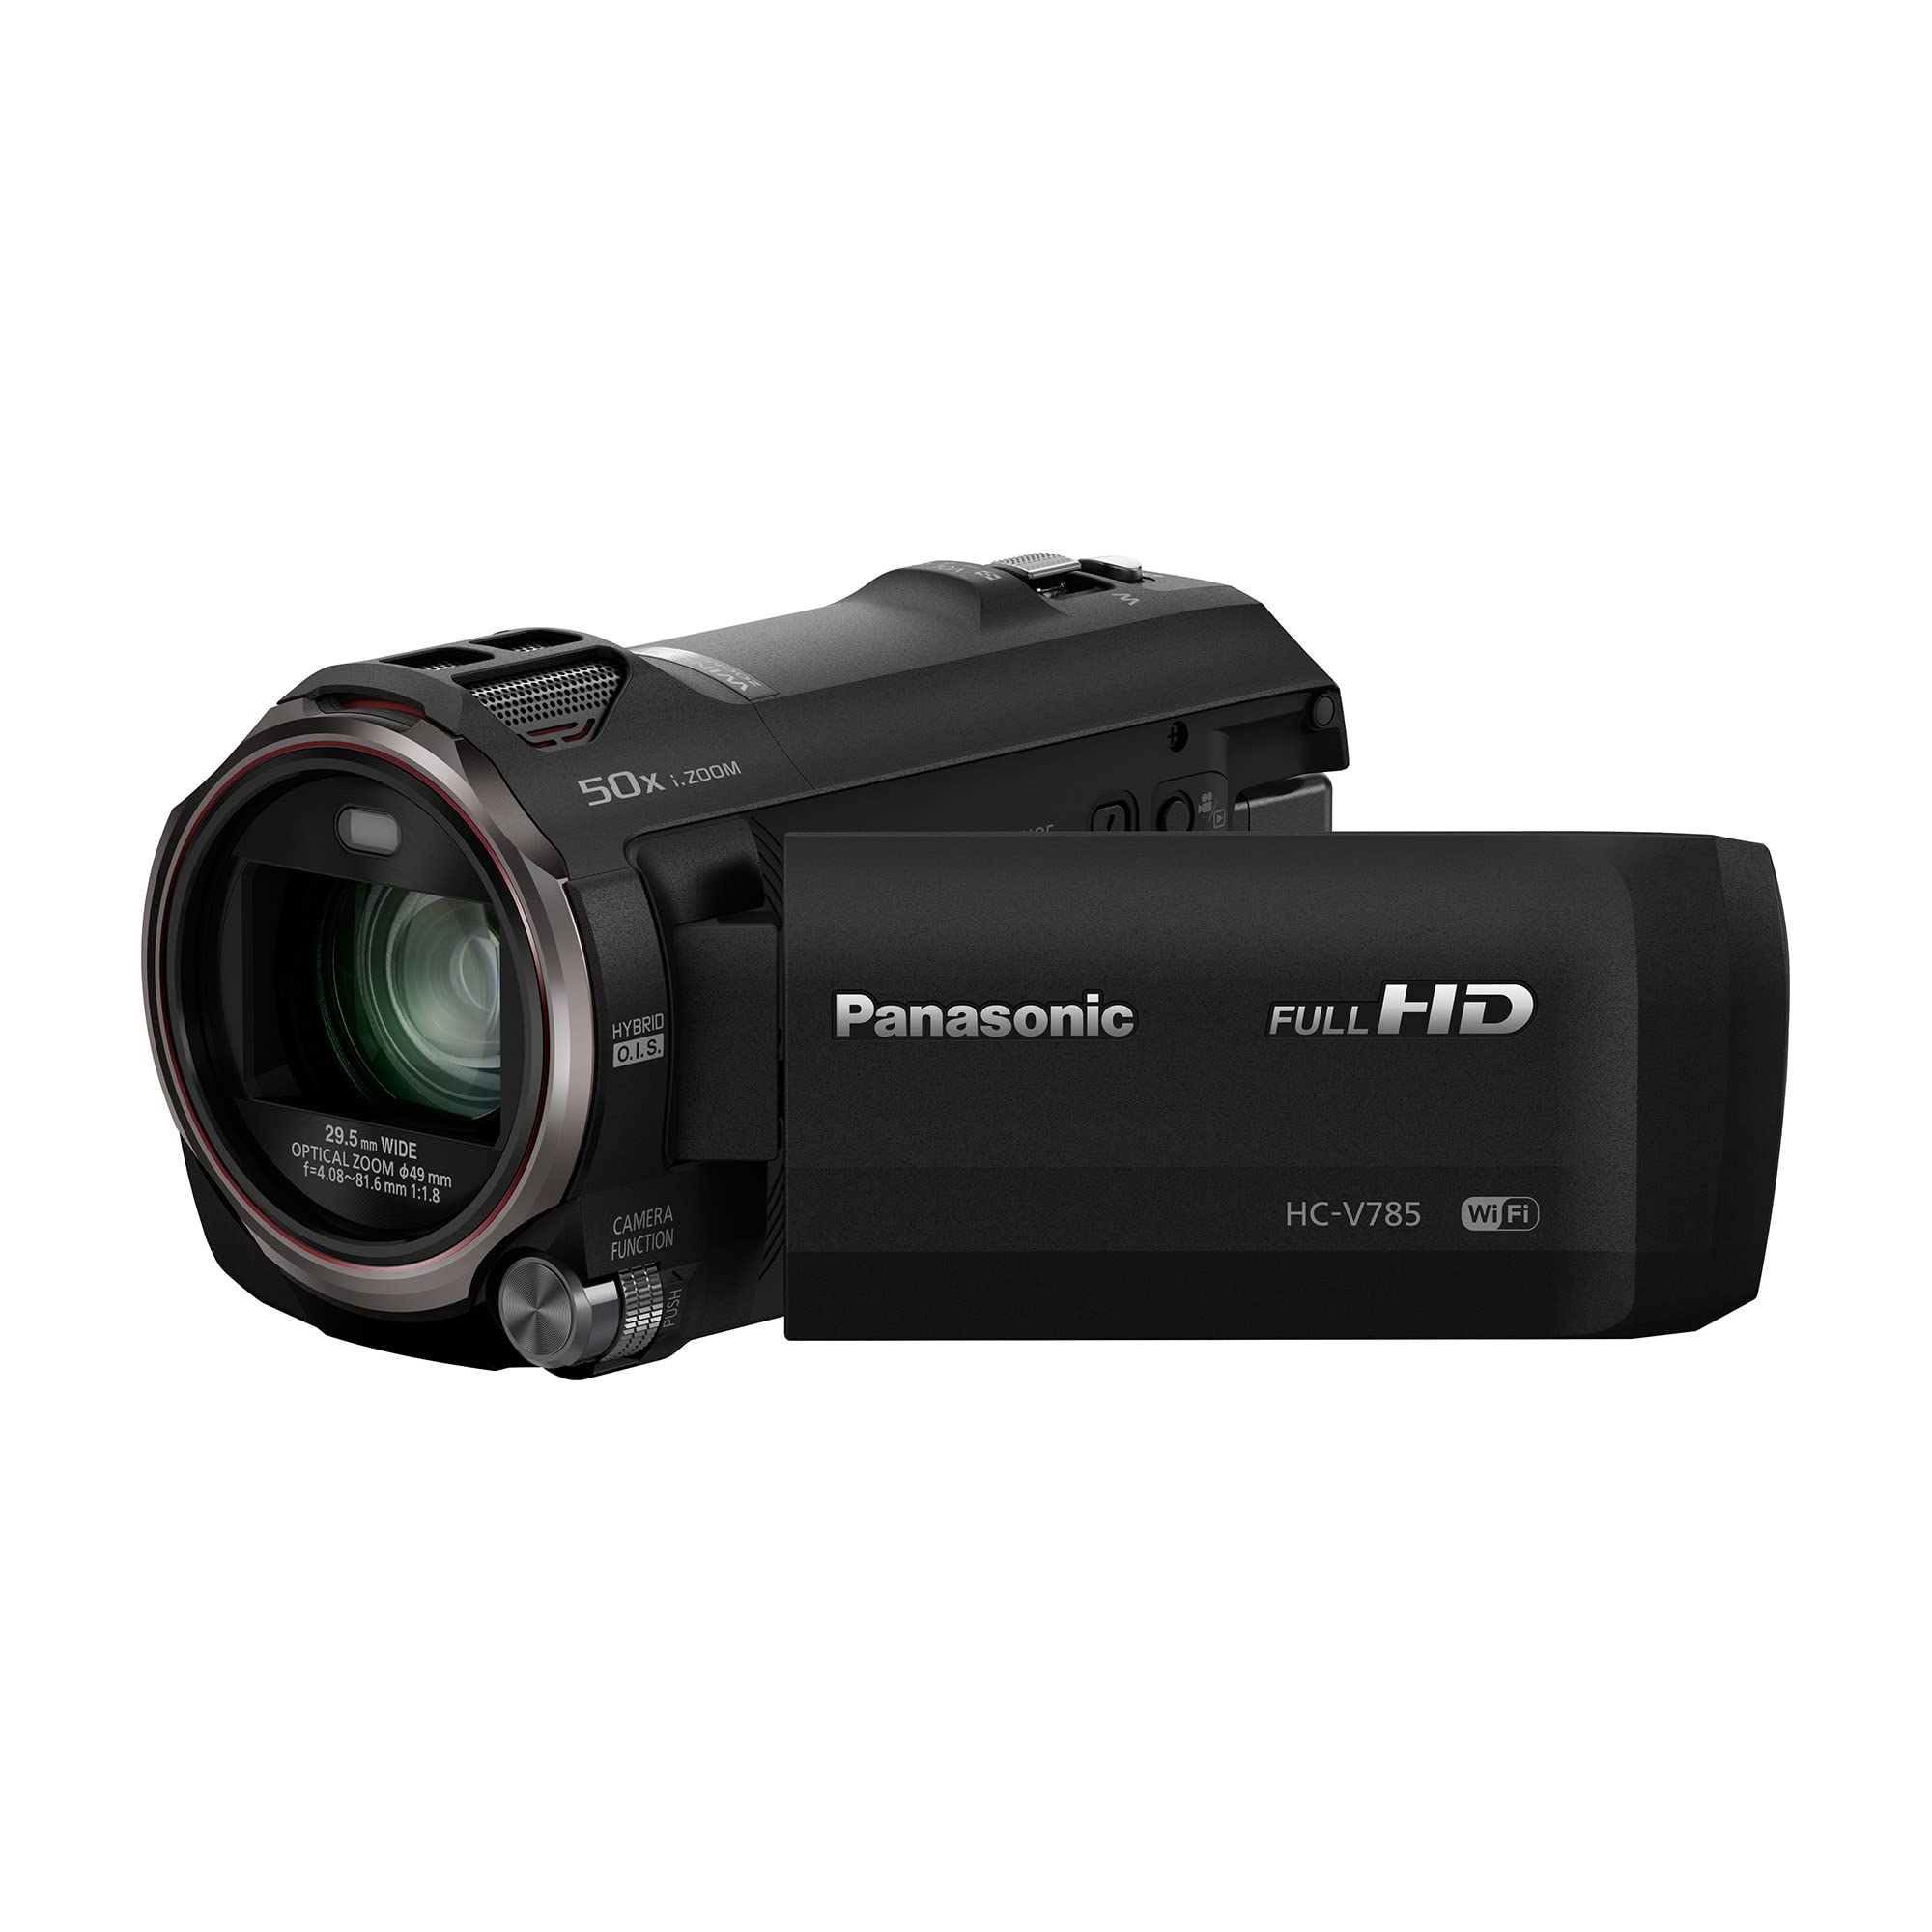 Panasonic フル HD ビデオカメラ ビデオカメラ 20X 光学ズーム 1/2.3 インチ BSI センサー HDR キャプチャ Wi-Fi スマートフォン HC-V785 (ブラック)